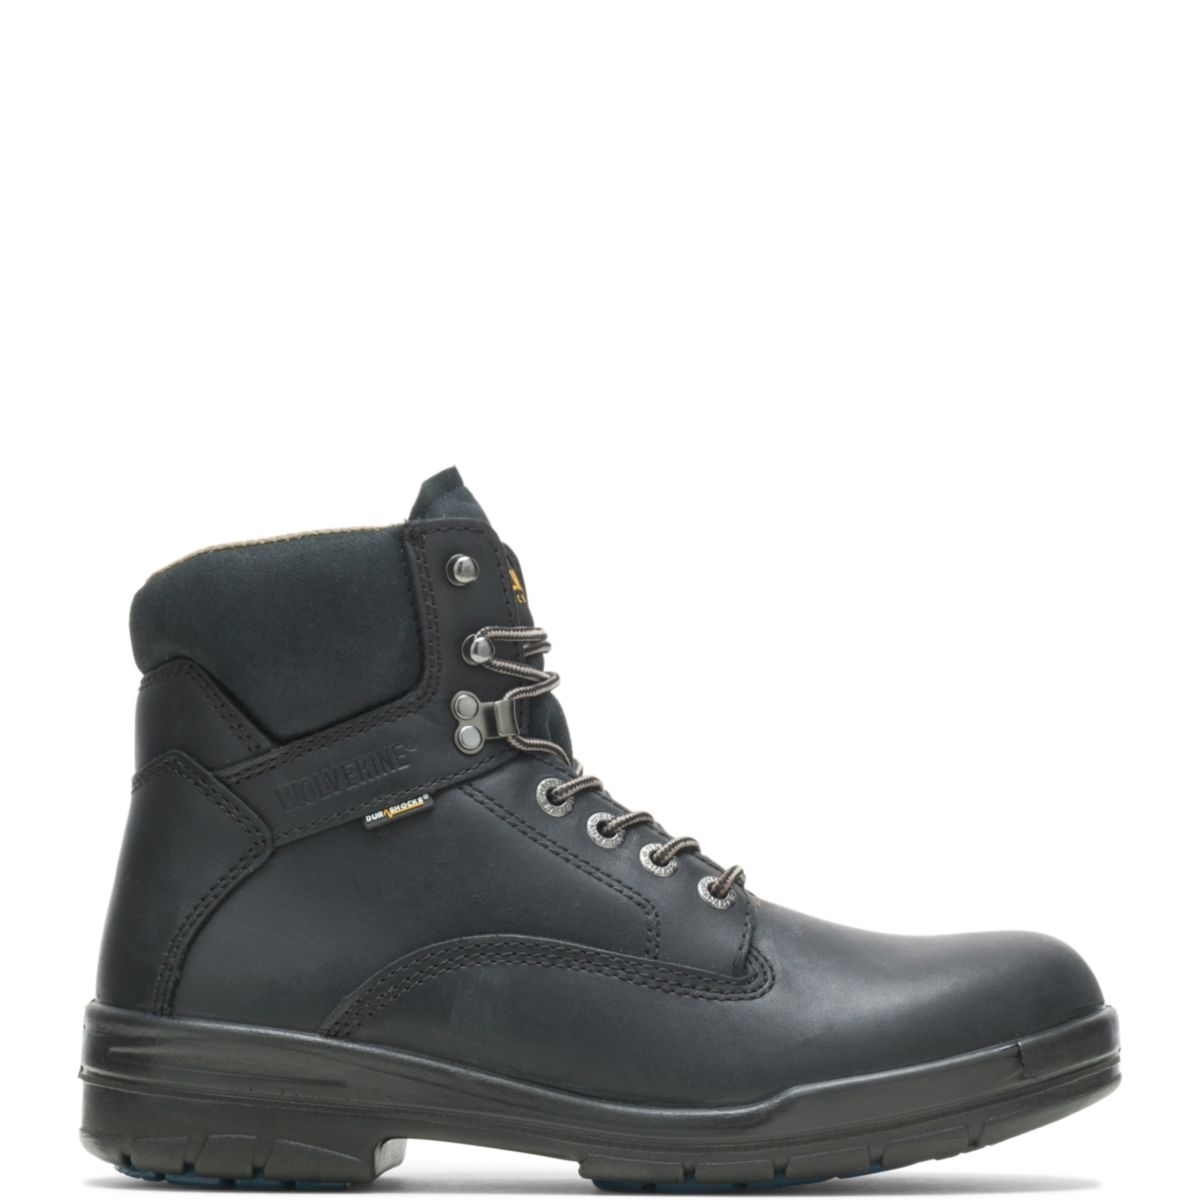 WOLVERINE Men's 6 DuraShocksÂ® Slip Resistant Direct-Attached Lined Soft Toe Work Boot Black - W03123 14 WIDE BLACK - BLACK, 11.5